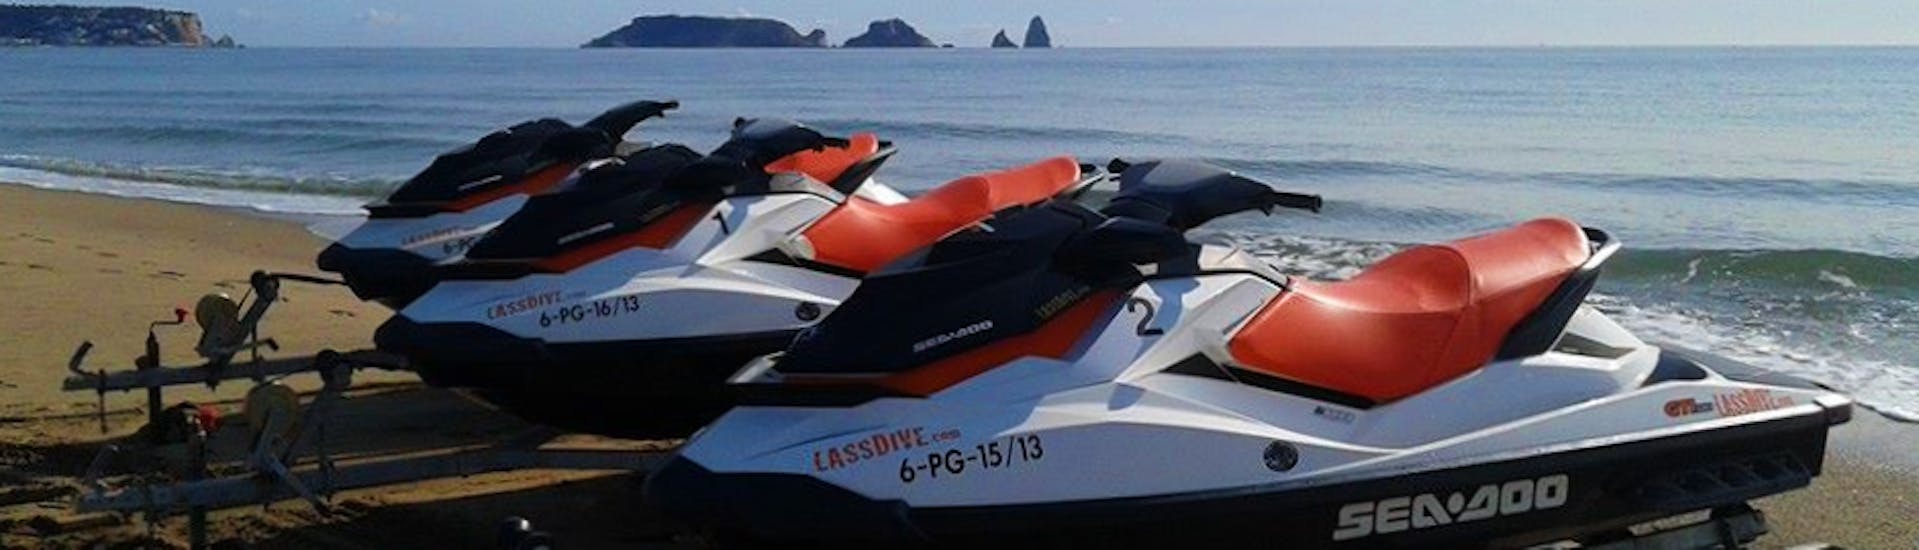 Alcune delle nostre moto d'acqua sono pronte per il nostro Jet Ski Safari lungo la Costa di Palamós e Calonge con Lassdive.